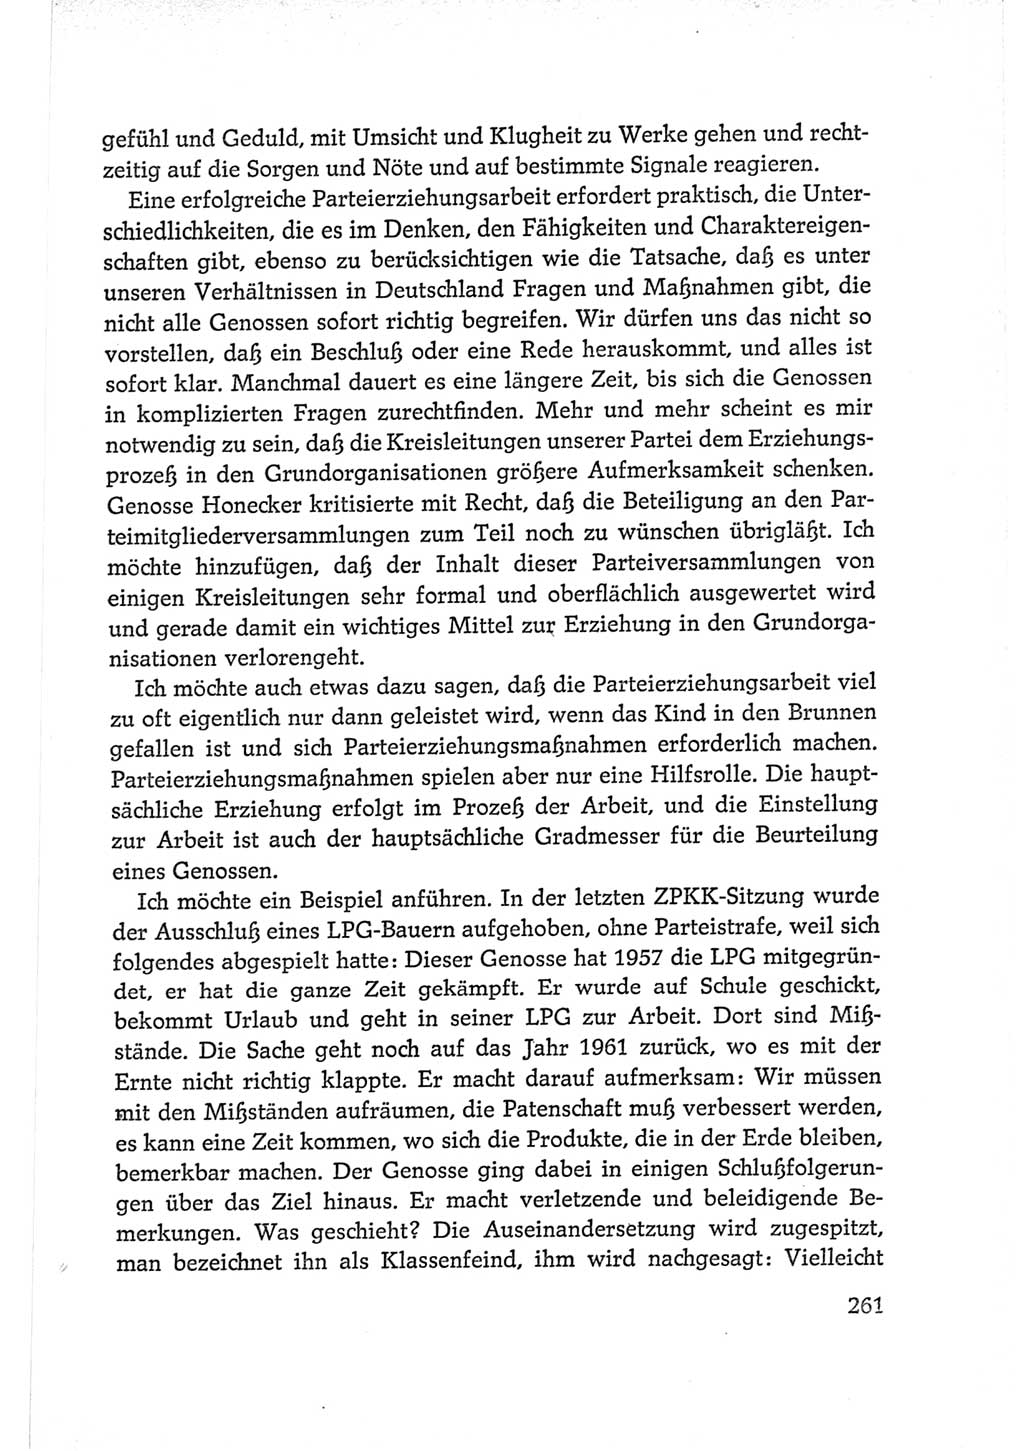 Protokoll der Verhandlungen des Ⅵ. Parteitages der Sozialistischen Einheitspartei Deutschlands (SED) [Deutsche Demokratische Republik (DDR)] 1963, Band Ⅱ, Seite 261 (Prot. Verh. Ⅵ. PT SED DDR 1963, Bd. Ⅱ, S. 261)